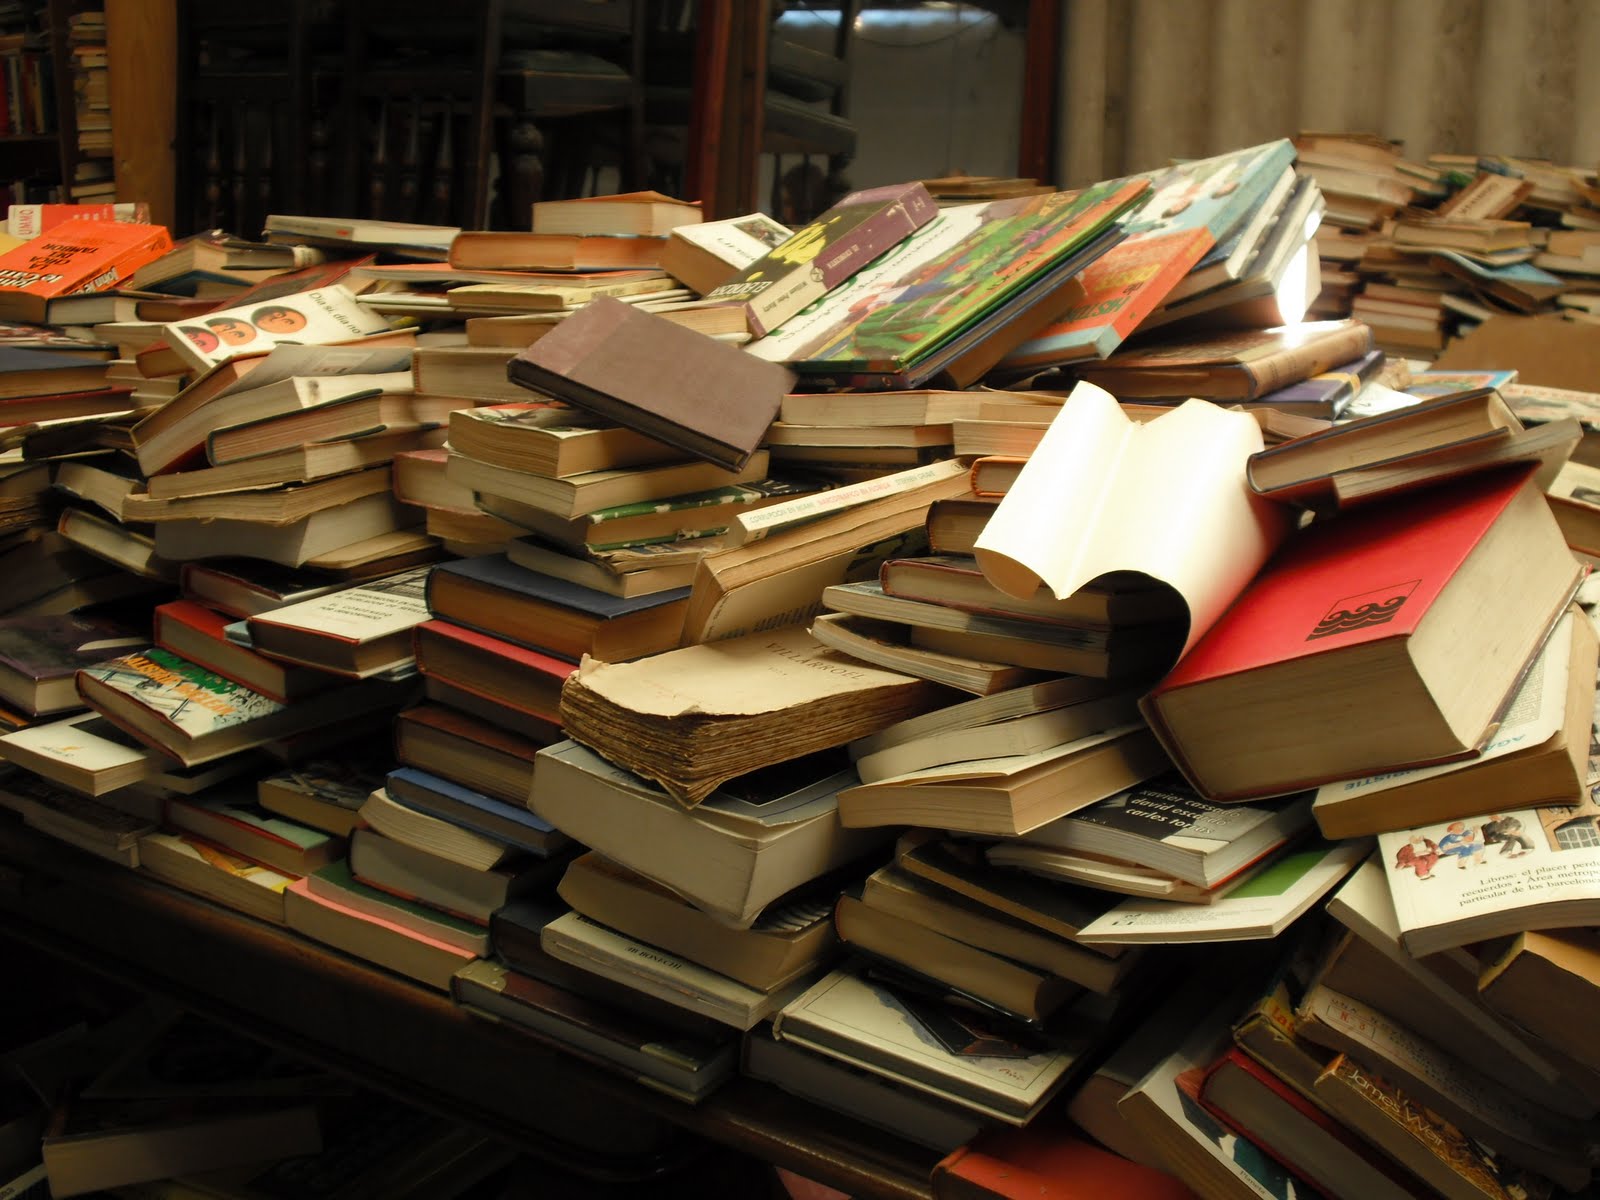 На учительском столе лежала стопка одинаковых учебников. Куча книг. Стопка книг. Стол заваленный книгами. Груда книг.